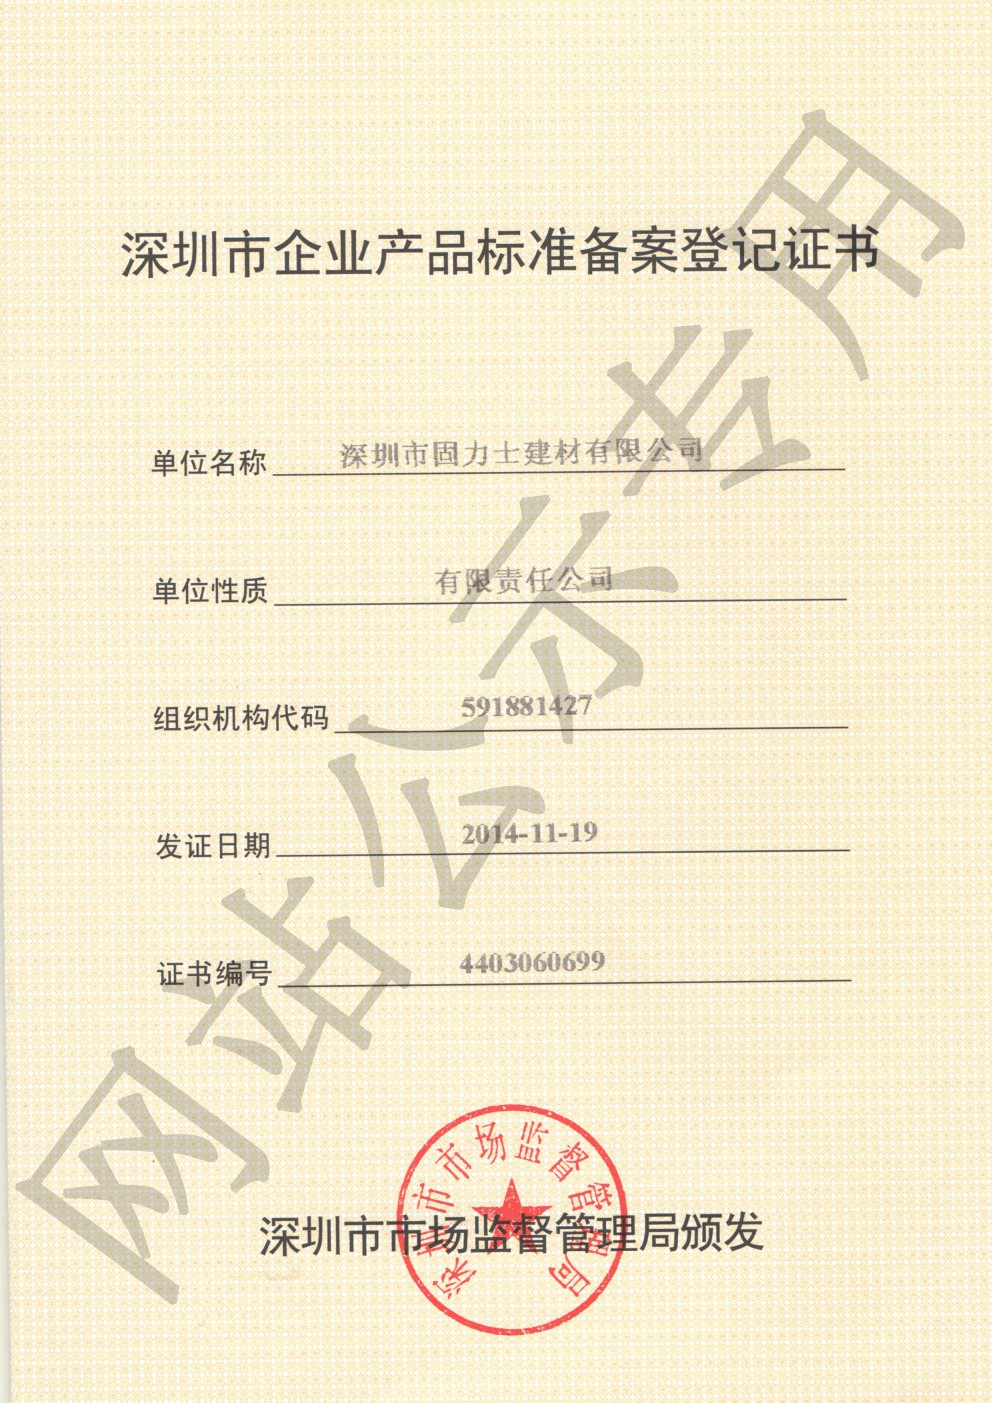 塔河企业产品标准登记证书